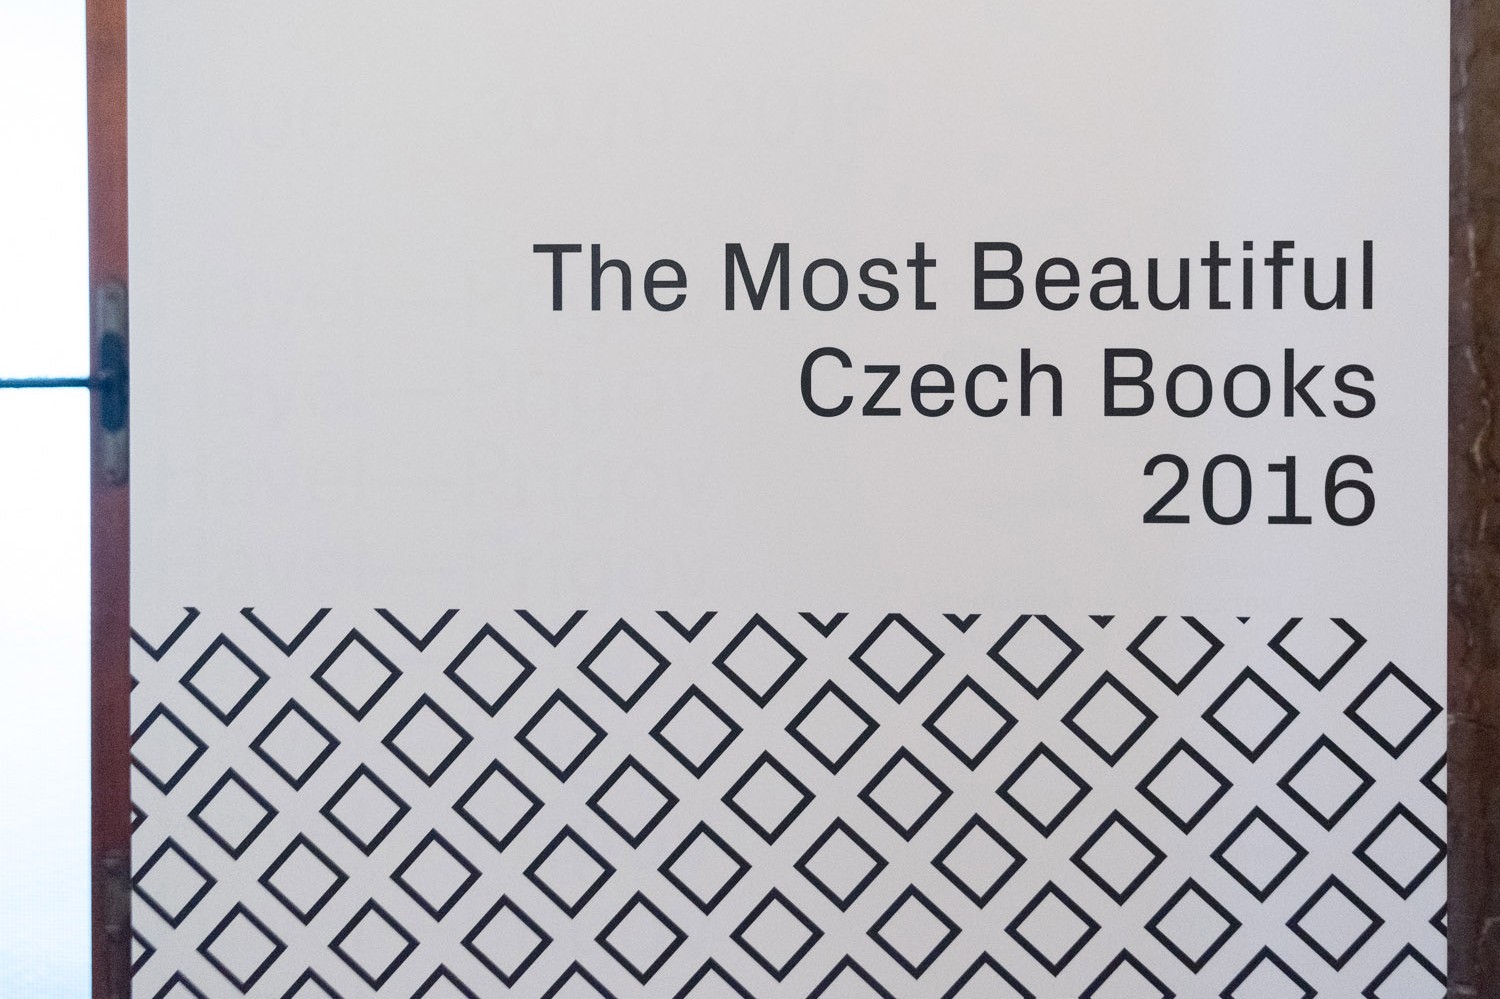 OBRAZEM: Vyhlášení Nejkrásnější české knihy roku 2016